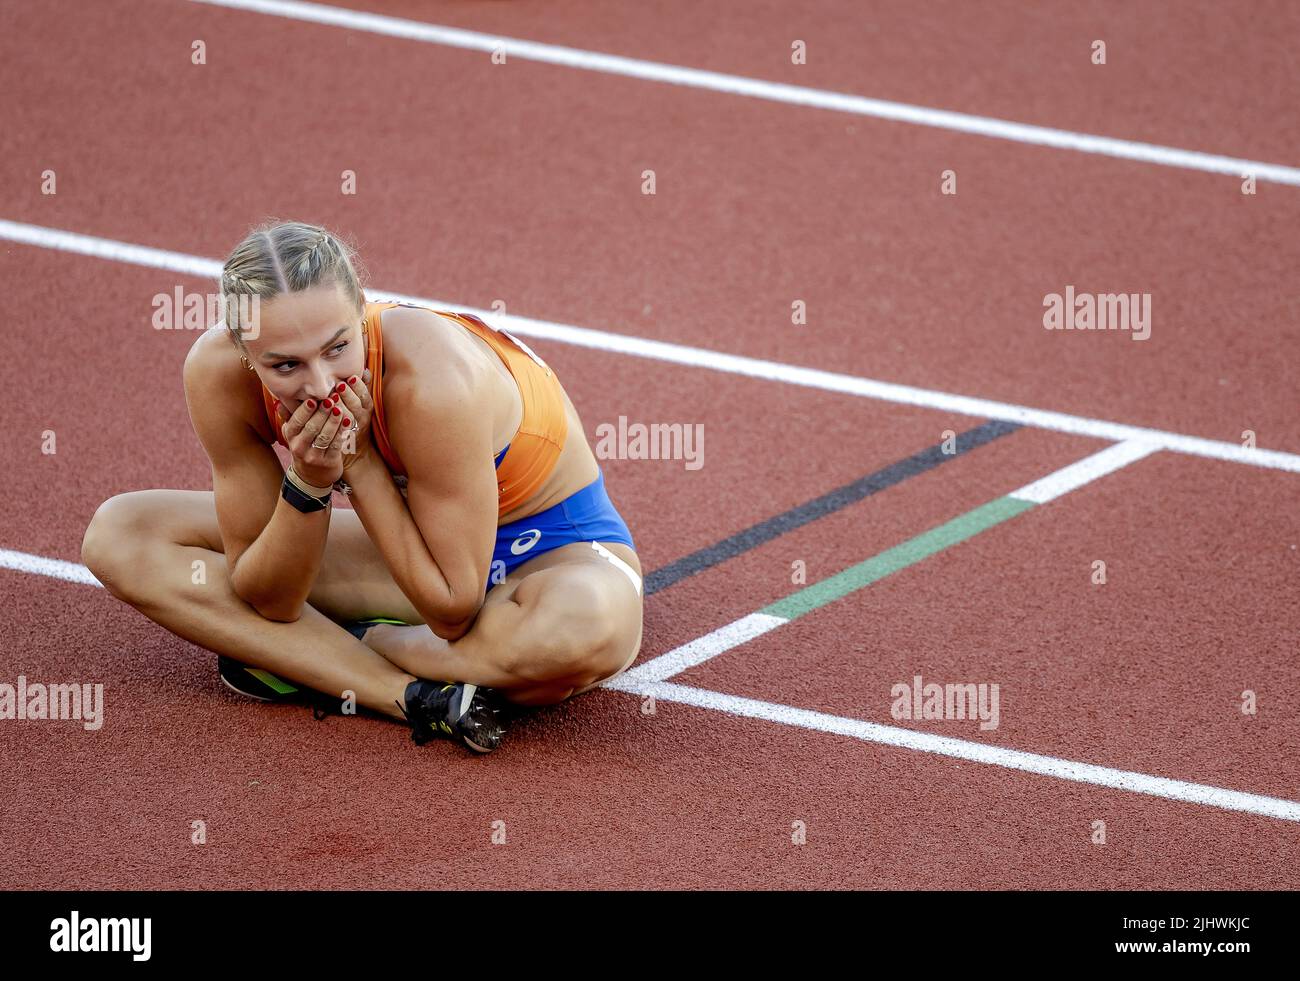 2022-07-21 03:55:25 EUGENE - Lieke Klaver in azione durante la semifinale dei 400 metri nella sesta giornata dei Campionati mondiali di atletica allo stadio Hayward Field. ANP ROBIN VAN LONKHUIJSEN olanda OUT - belgio OUT Foto Stock